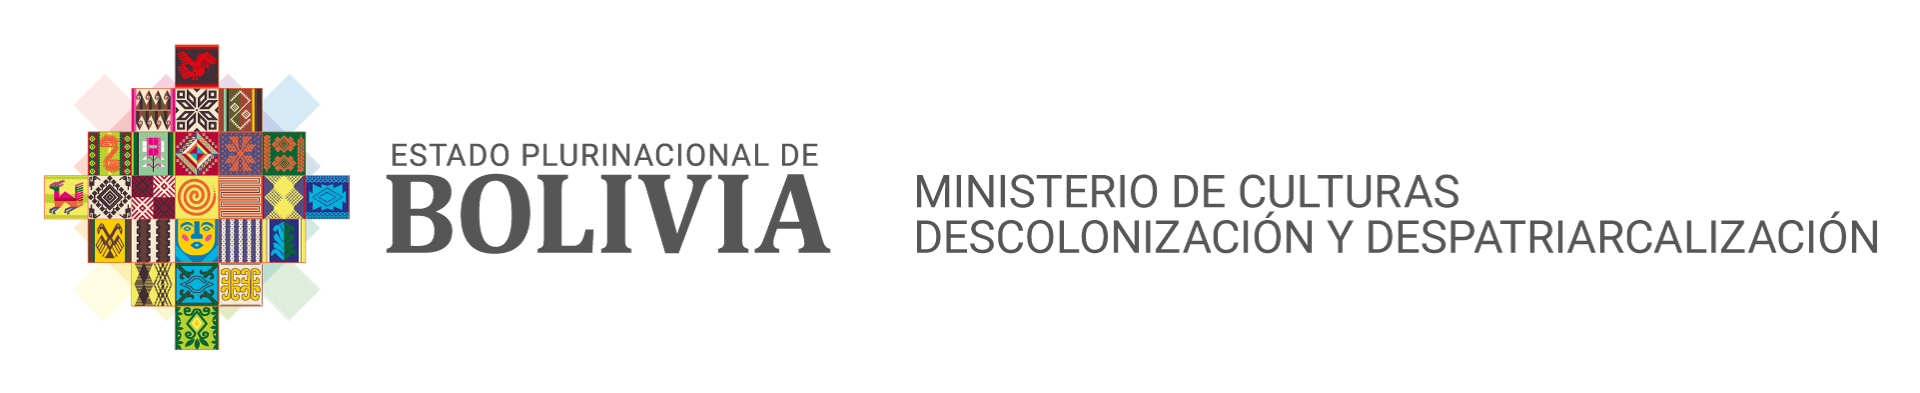 Ministerio de Culturas, Descolonización y Despatriarcalización